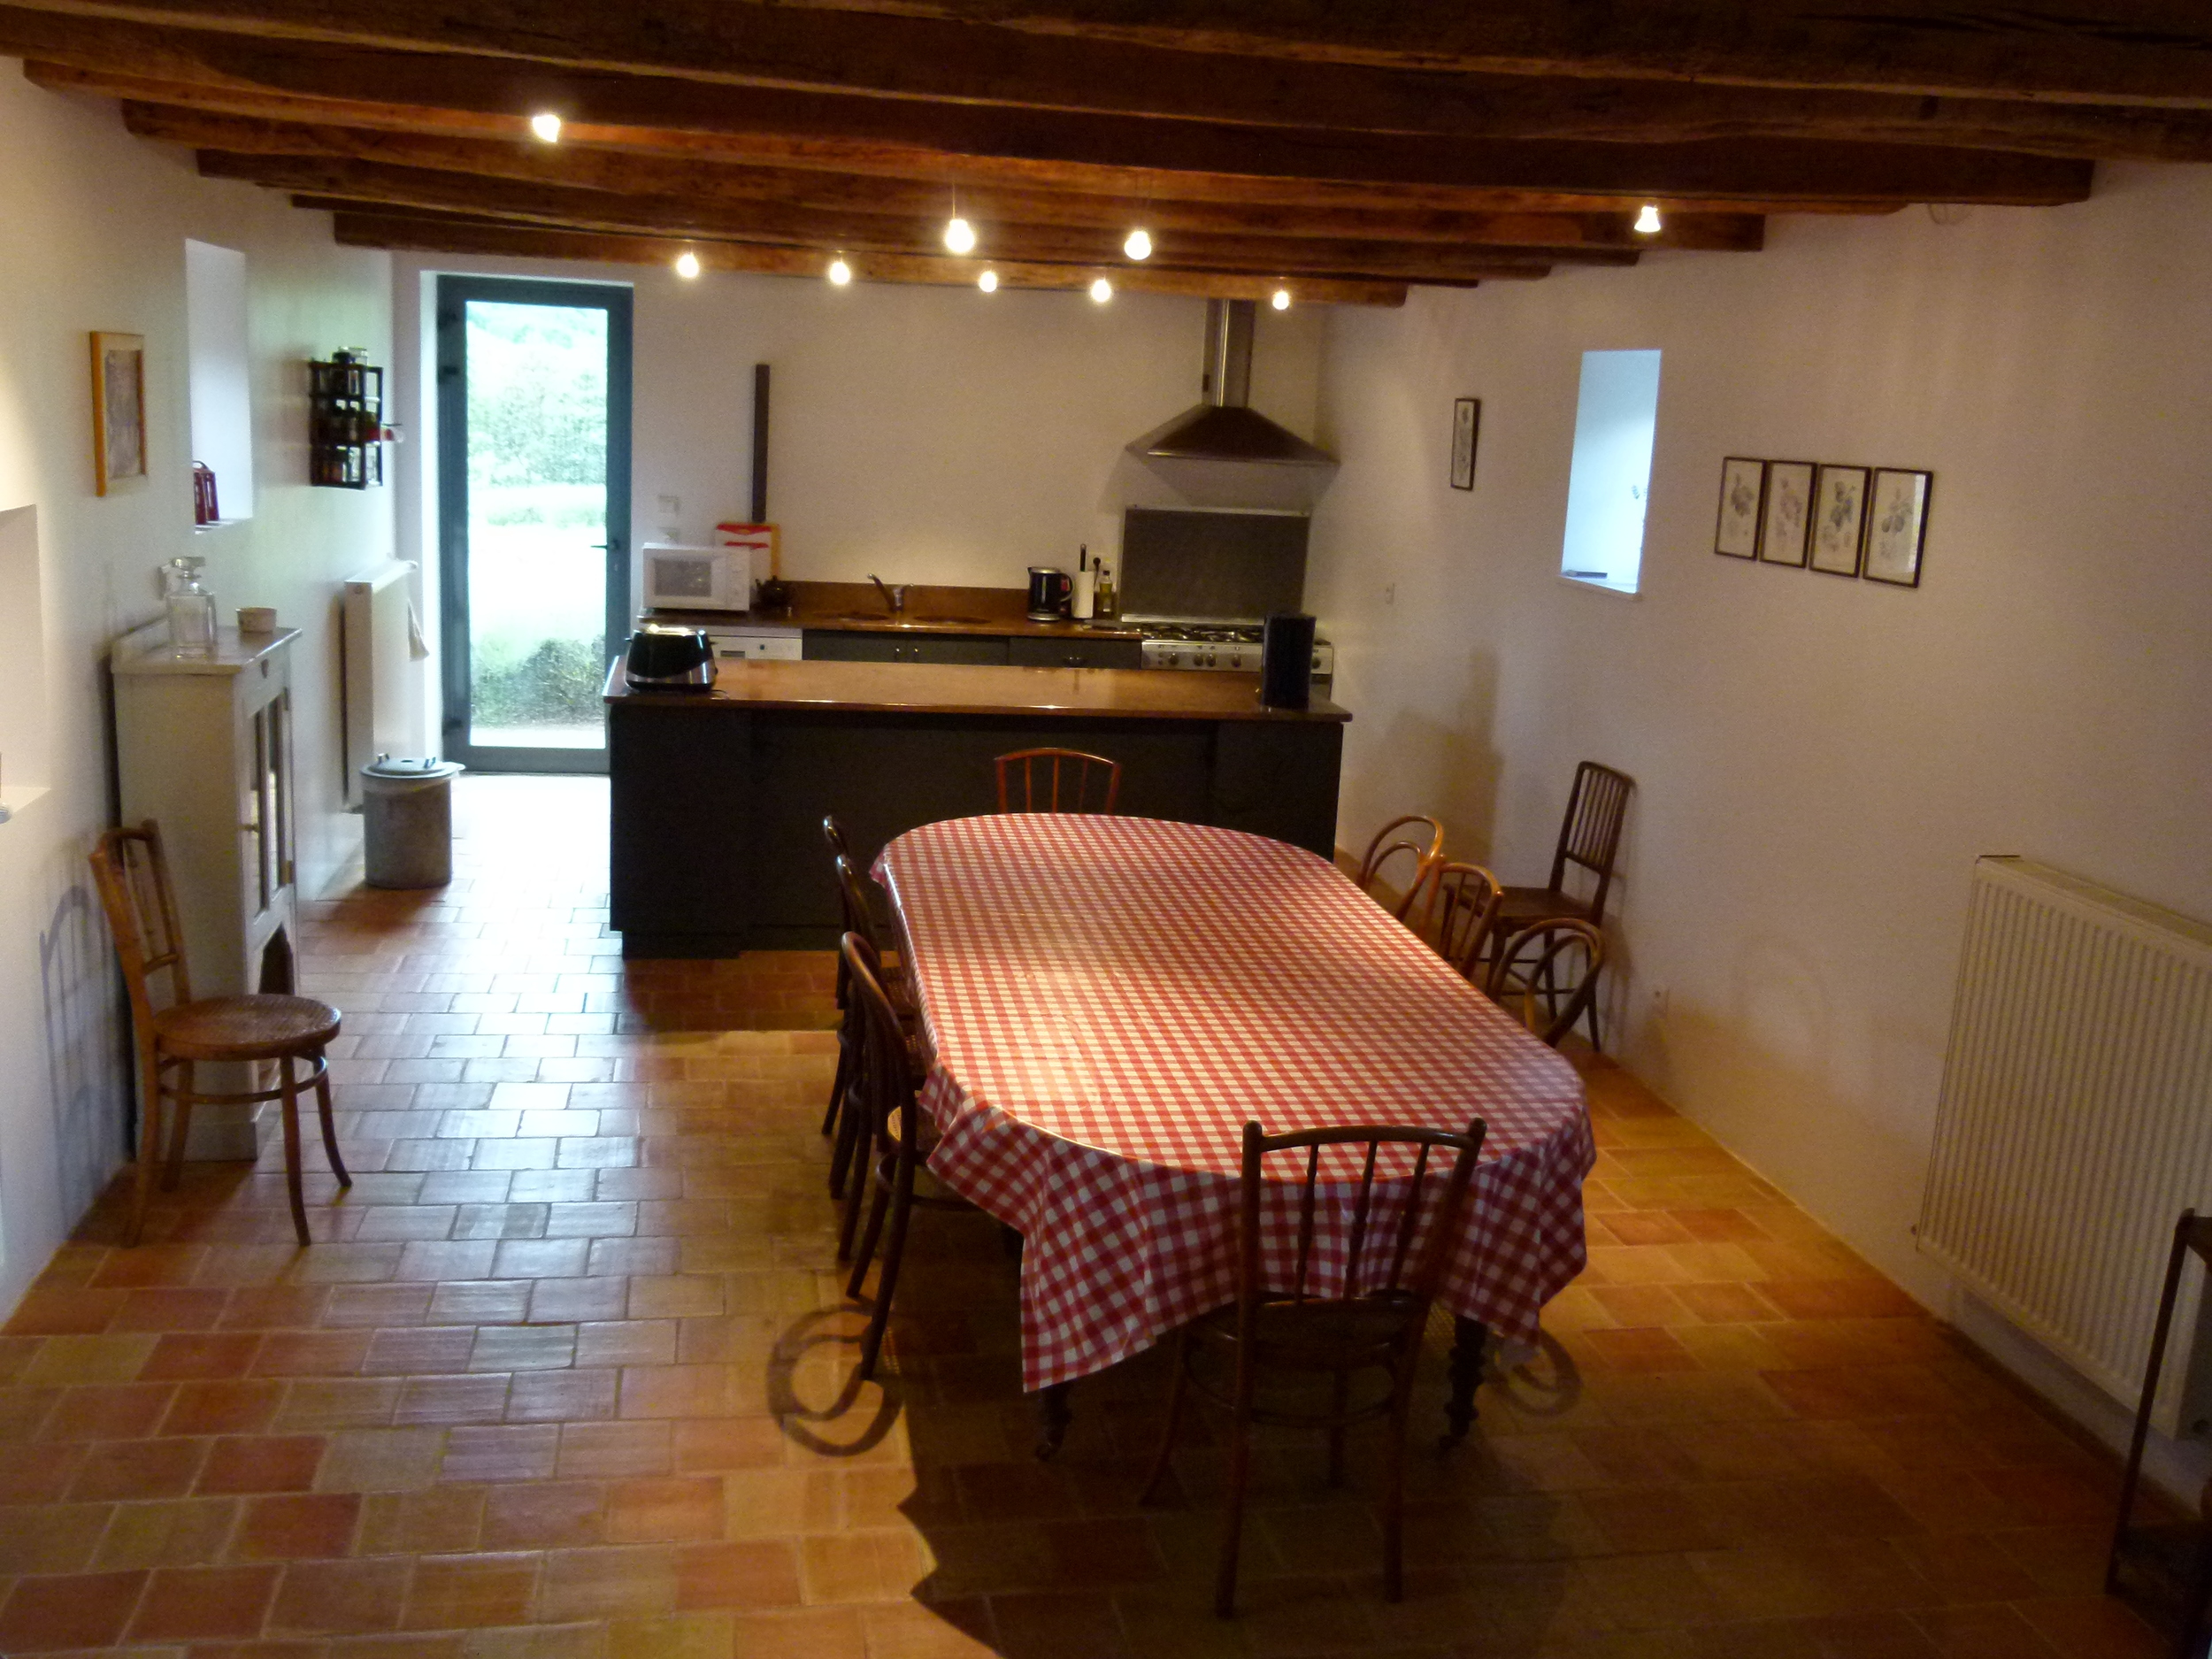 The kitchen at La Roche